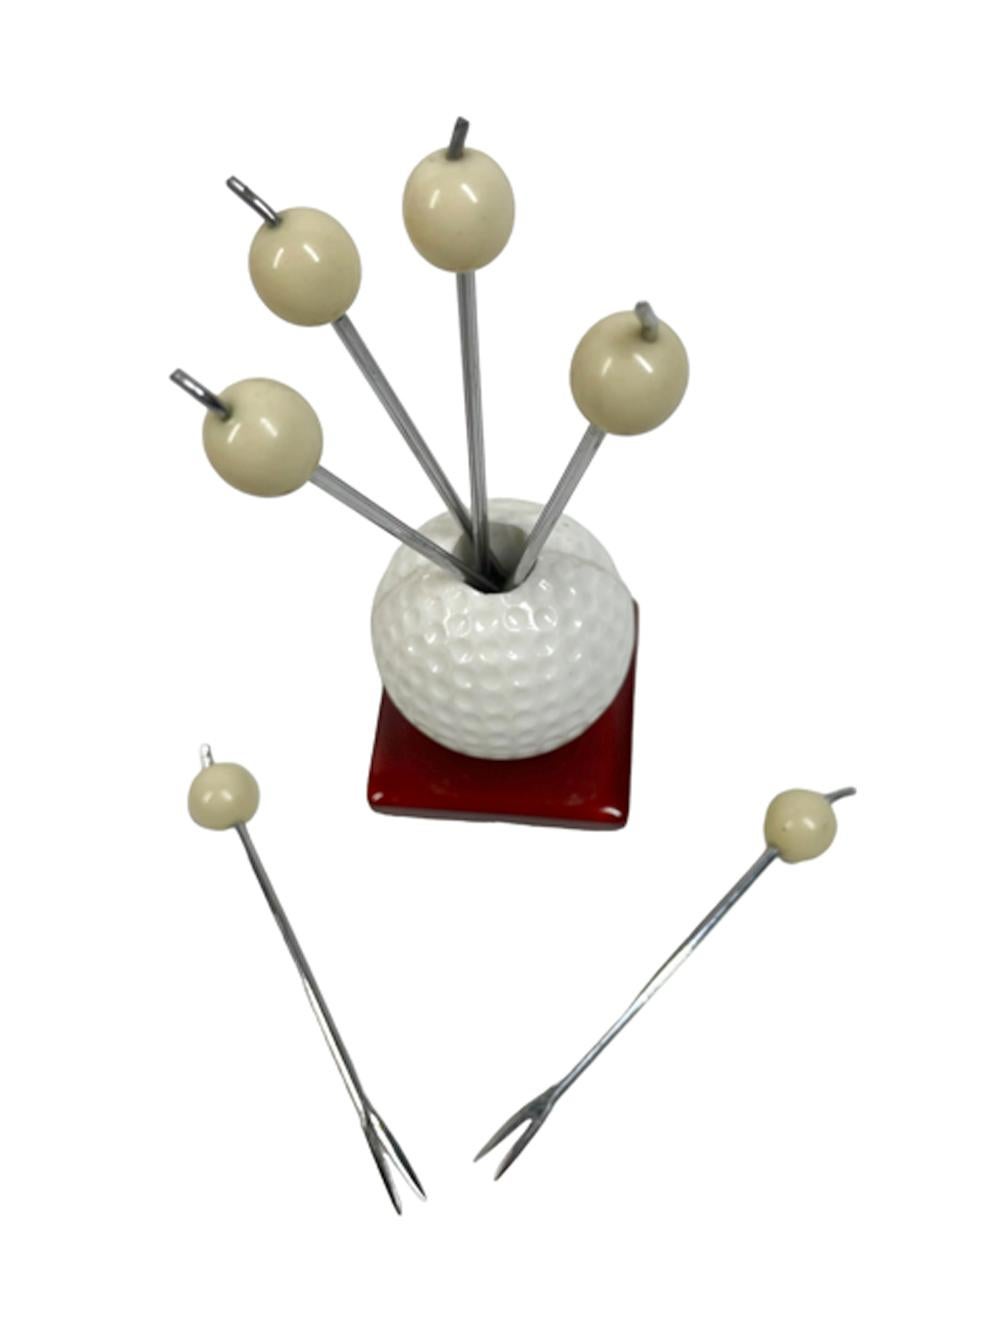 Lot de six pics à cocktail chromés fourchus à tête de boule blanche dans un support de balle de golf en plastique blanc avec une base carrée en bakélite translucide de couleur jus de pomme. 